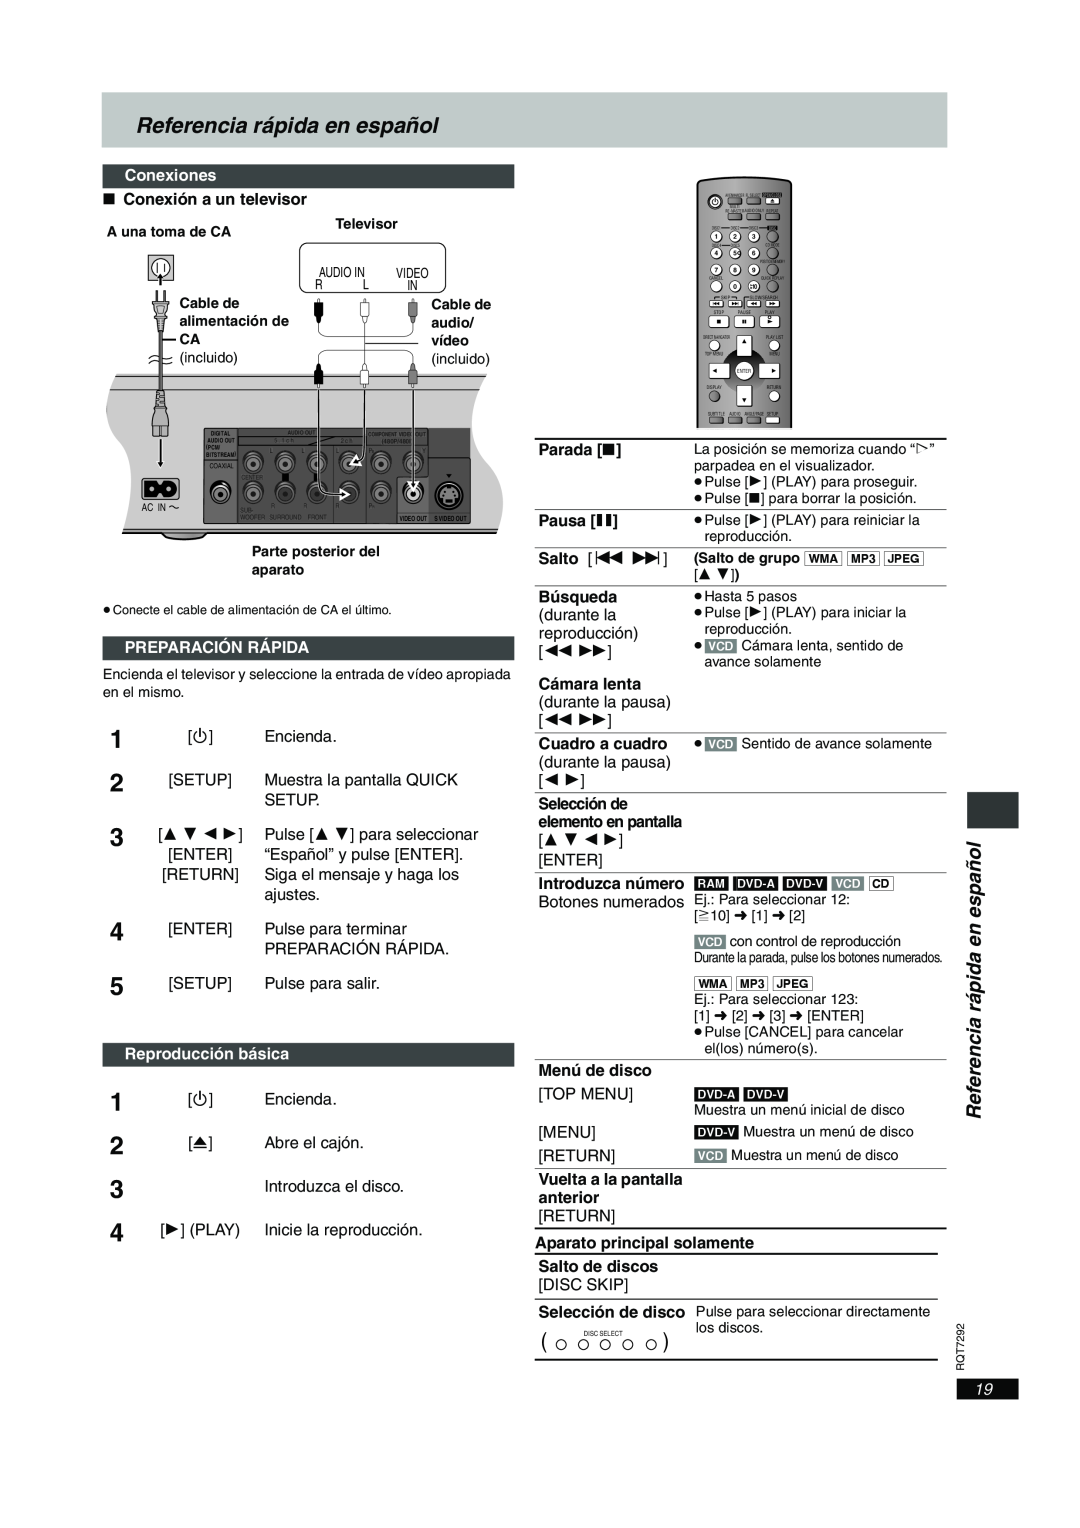 Panasonic DVD-F84 Referencia rápida en español, Conexiones, Preparación Rápida, Reproducción básica 